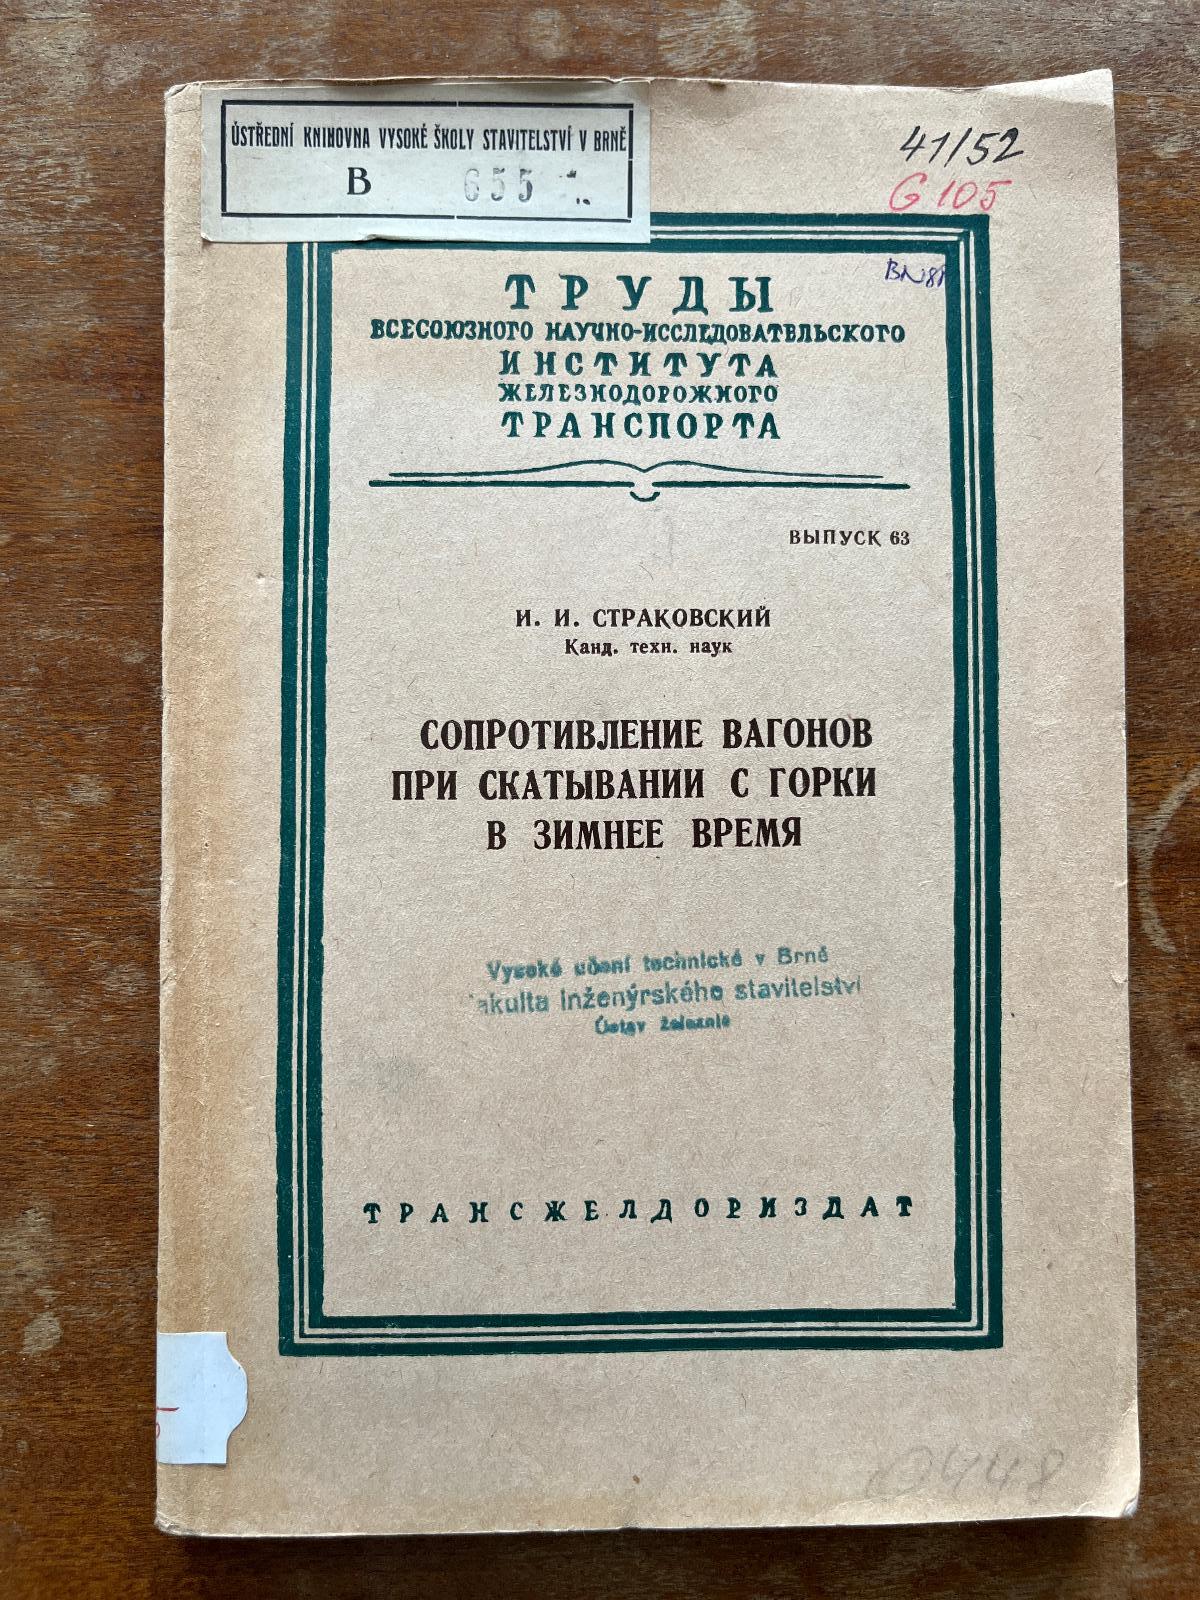 Cudzojazyčná železničná literatúra (1952) (f) - Knihy